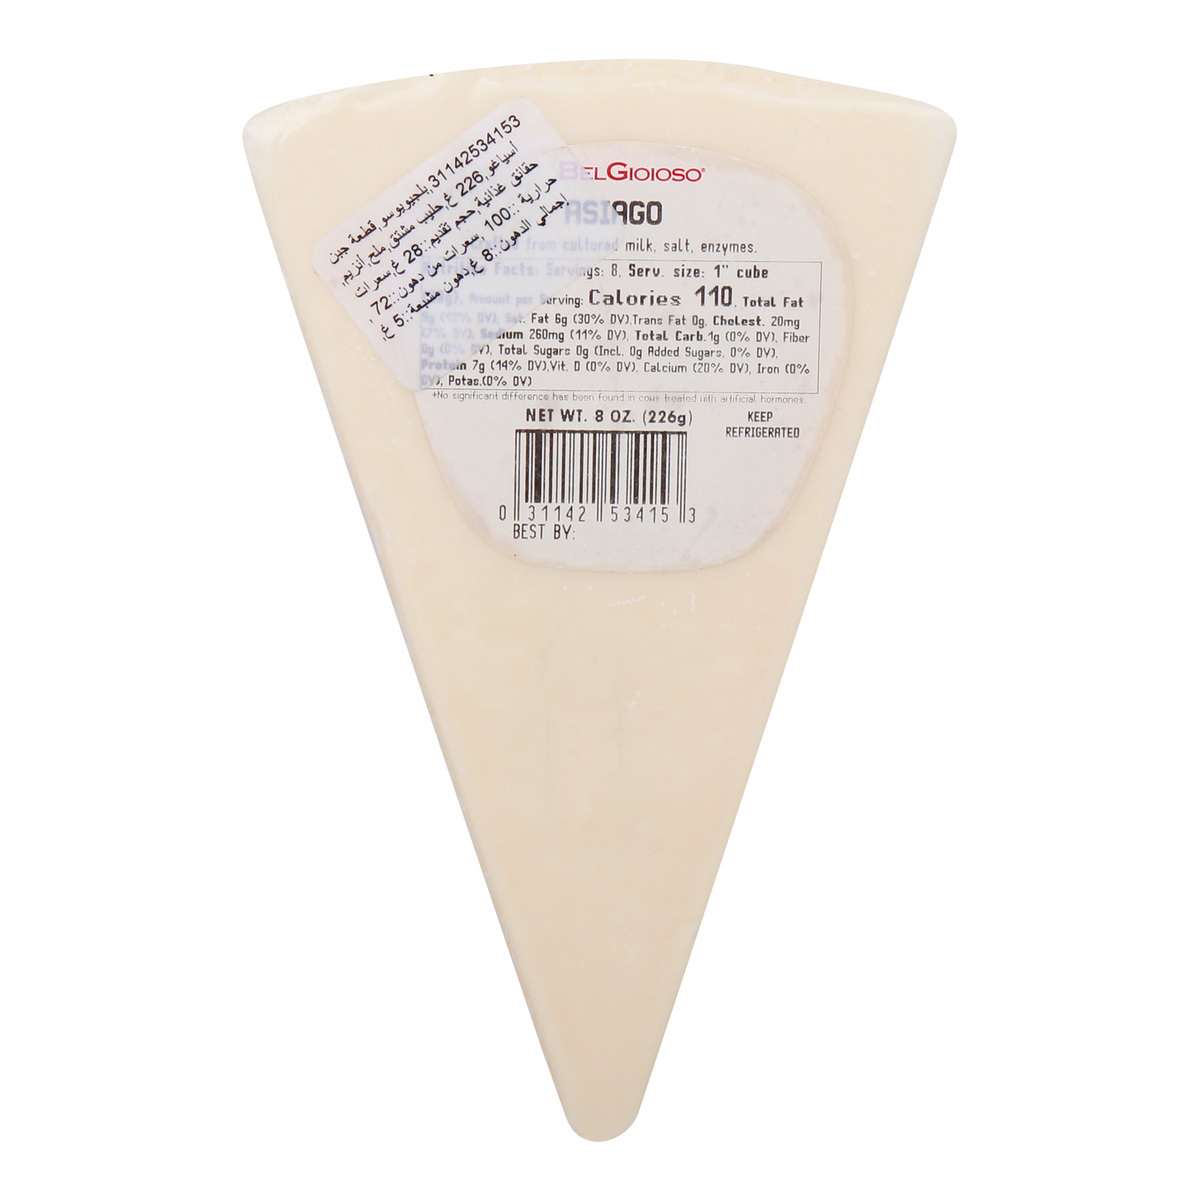 Belgioioso Asiago Cheese, 226 g